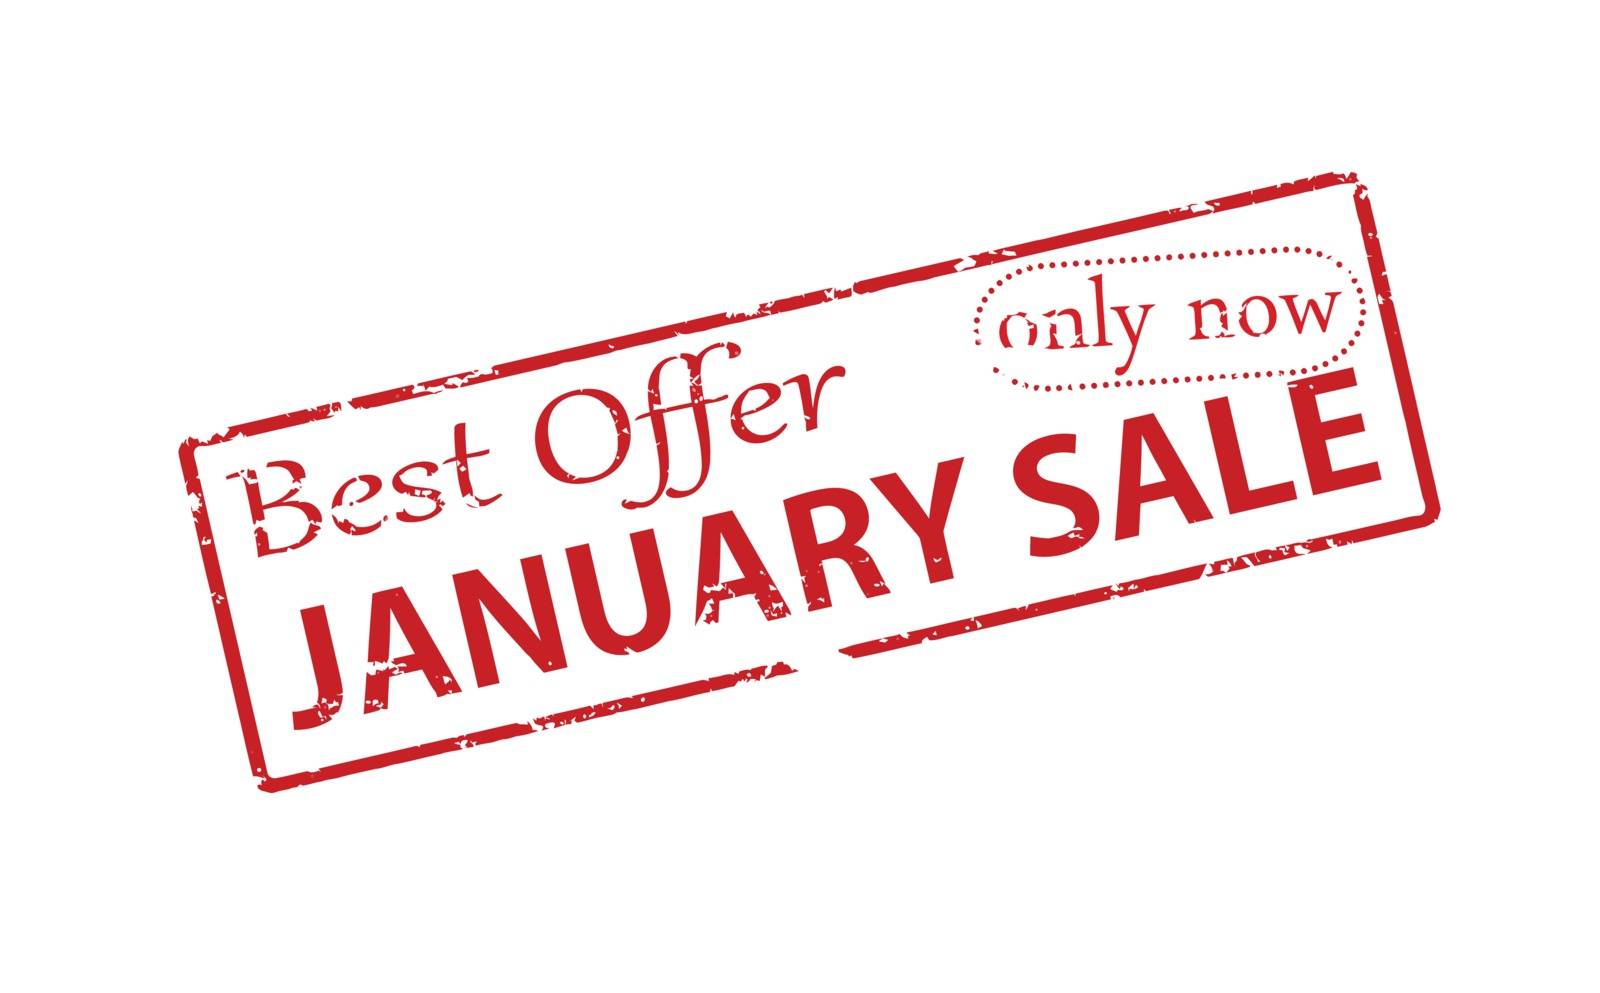 Best offer January sale by carmenbobo